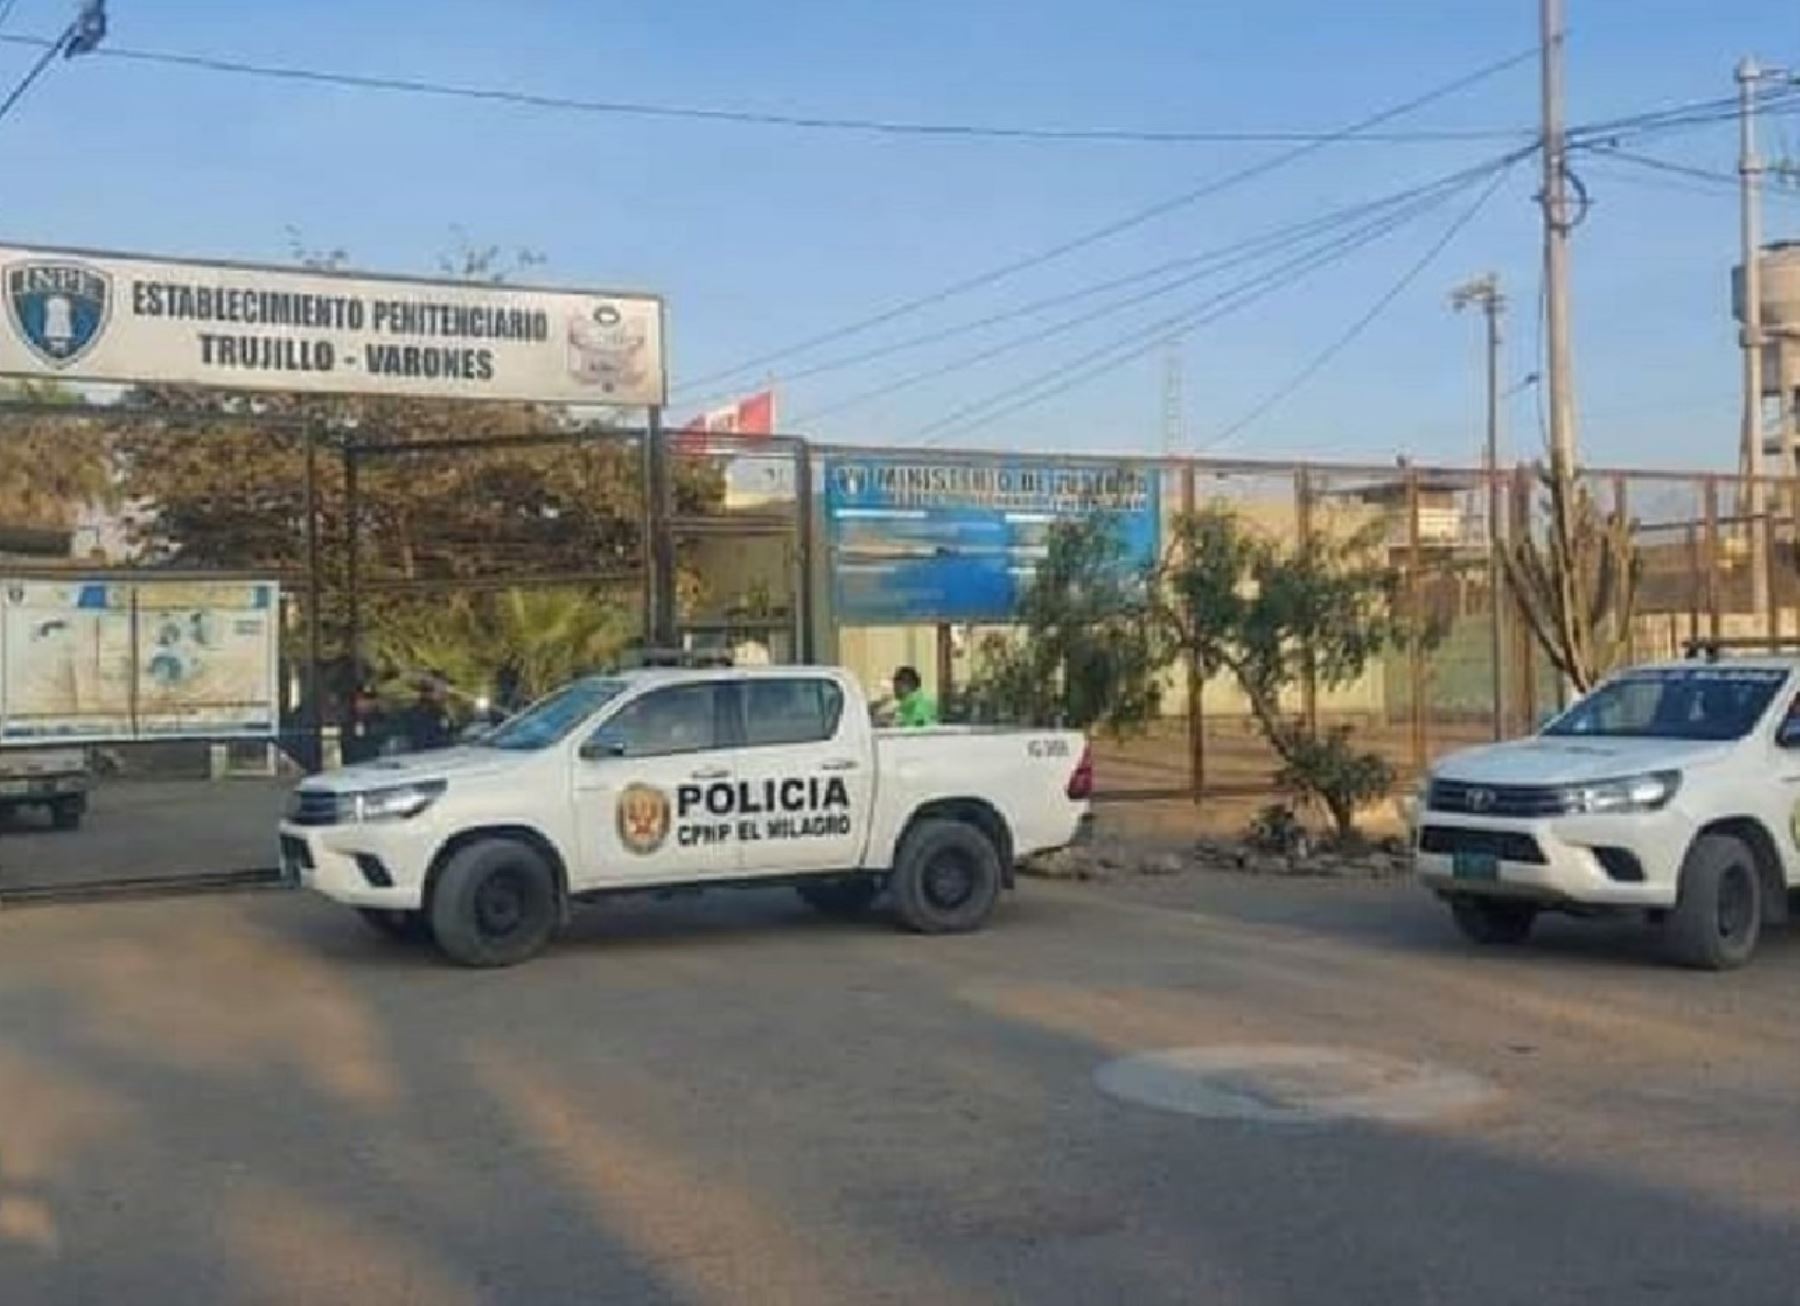 El Instituto Nacional Penitenciario (Inpe) informó que se investiga la muerte de dos internos en el interior del penal El Milagro de Trujillo. ANDINA/Difusión